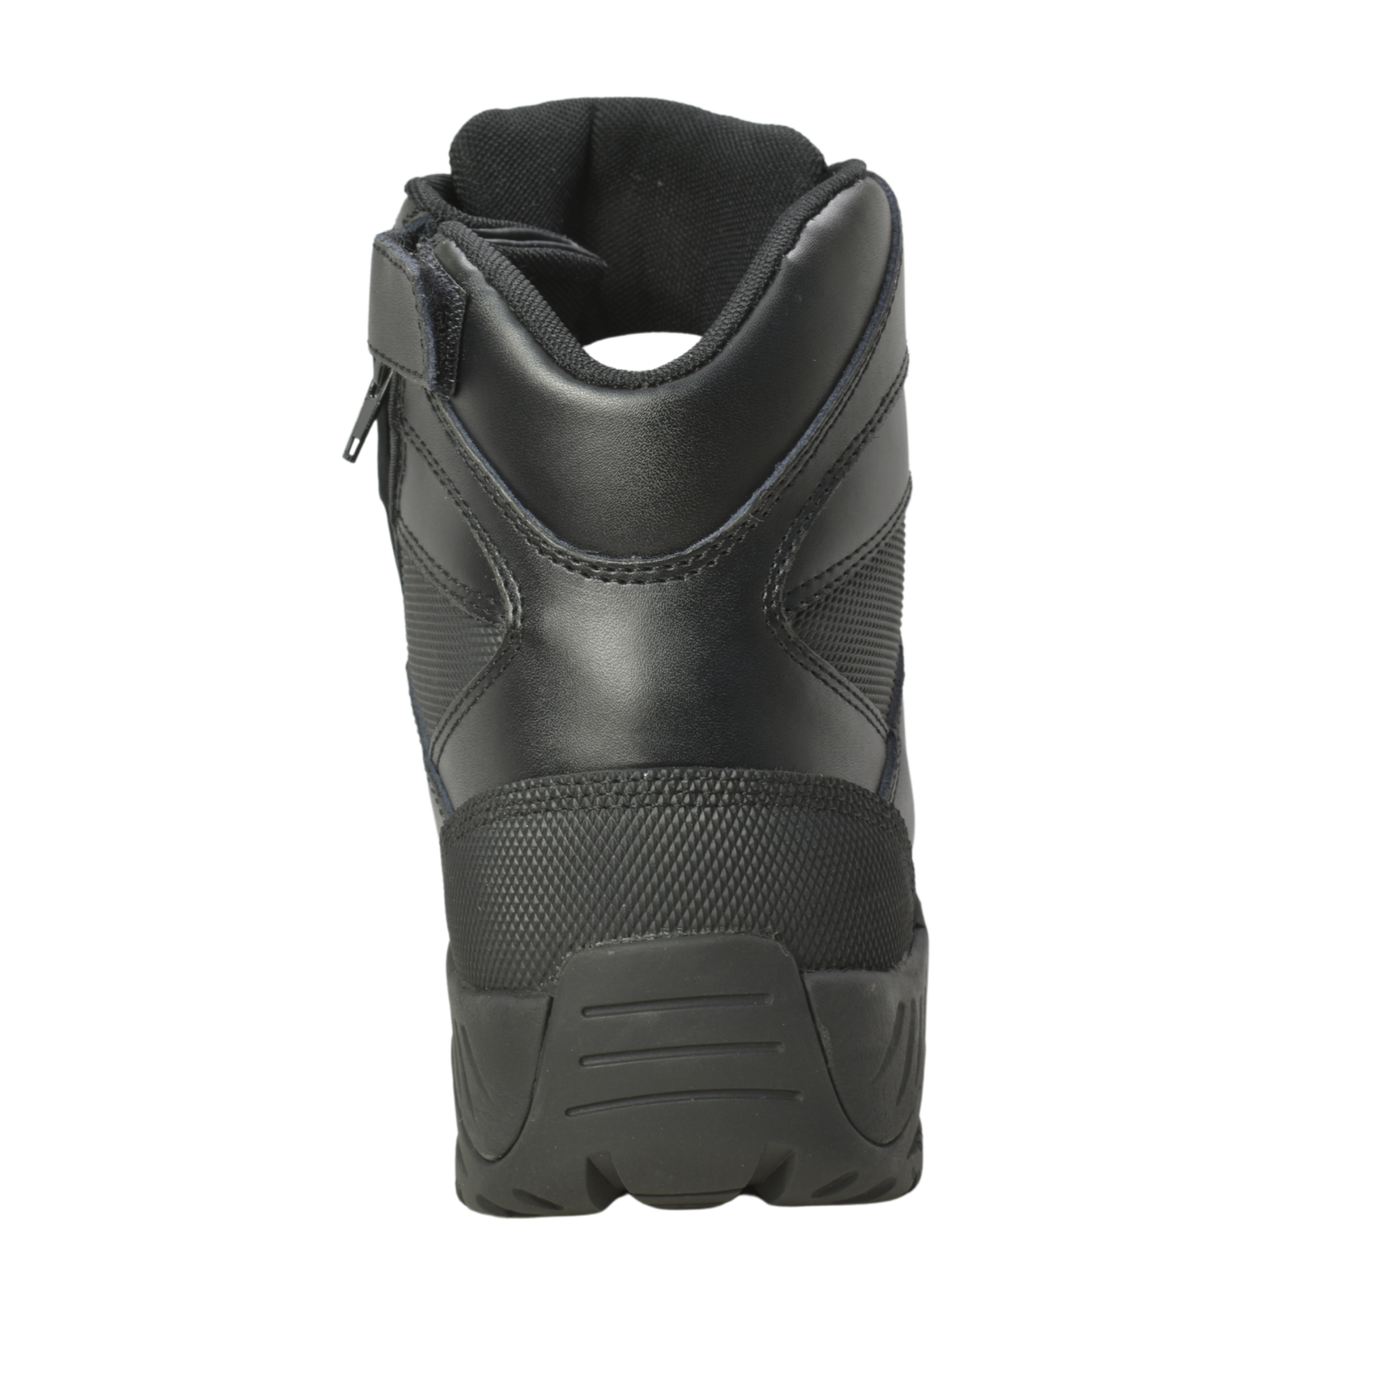 Urban PDU - Men's 6" Black Waterproof Composite Toe Tactical Boot - KT1002